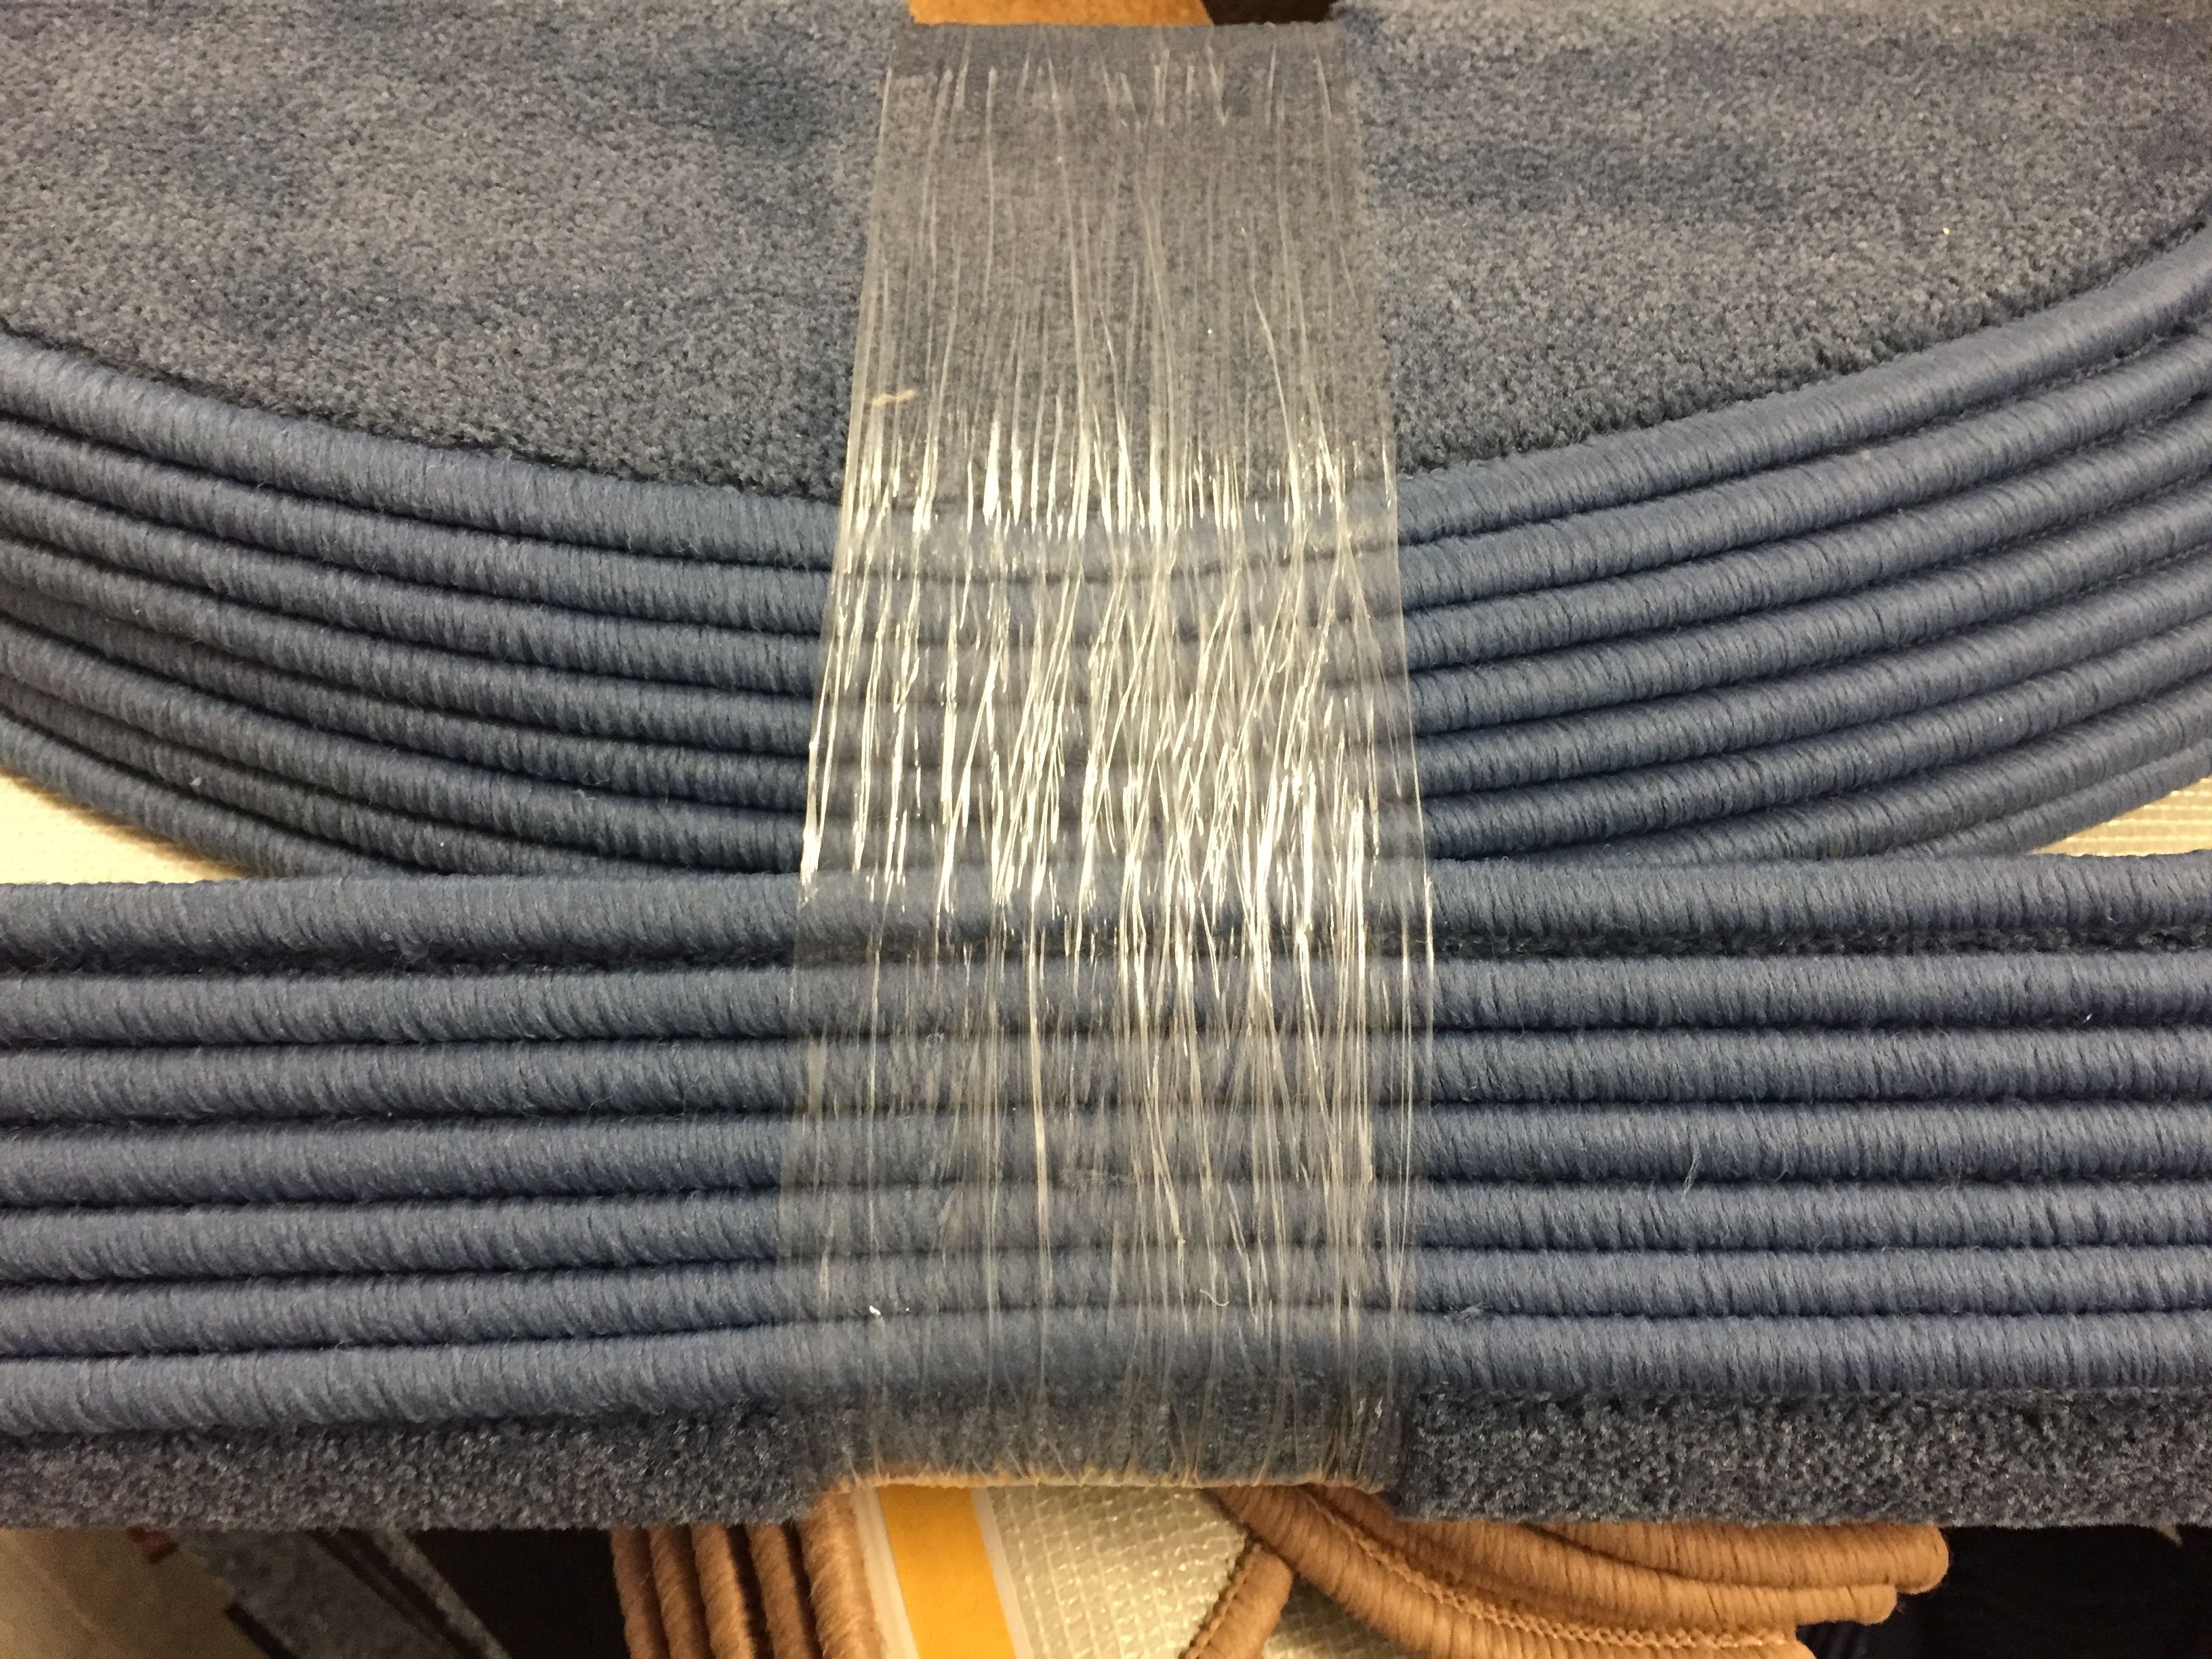 chrysant Commissie Bacteriën v)Trapmatten set 15 stuks kleur Blauw € 3-, p/st – Langenbach tapijt | De  goedkoopste leverancier van karpetten en vloerkleden. Kuntgras kunst gras  voordelig